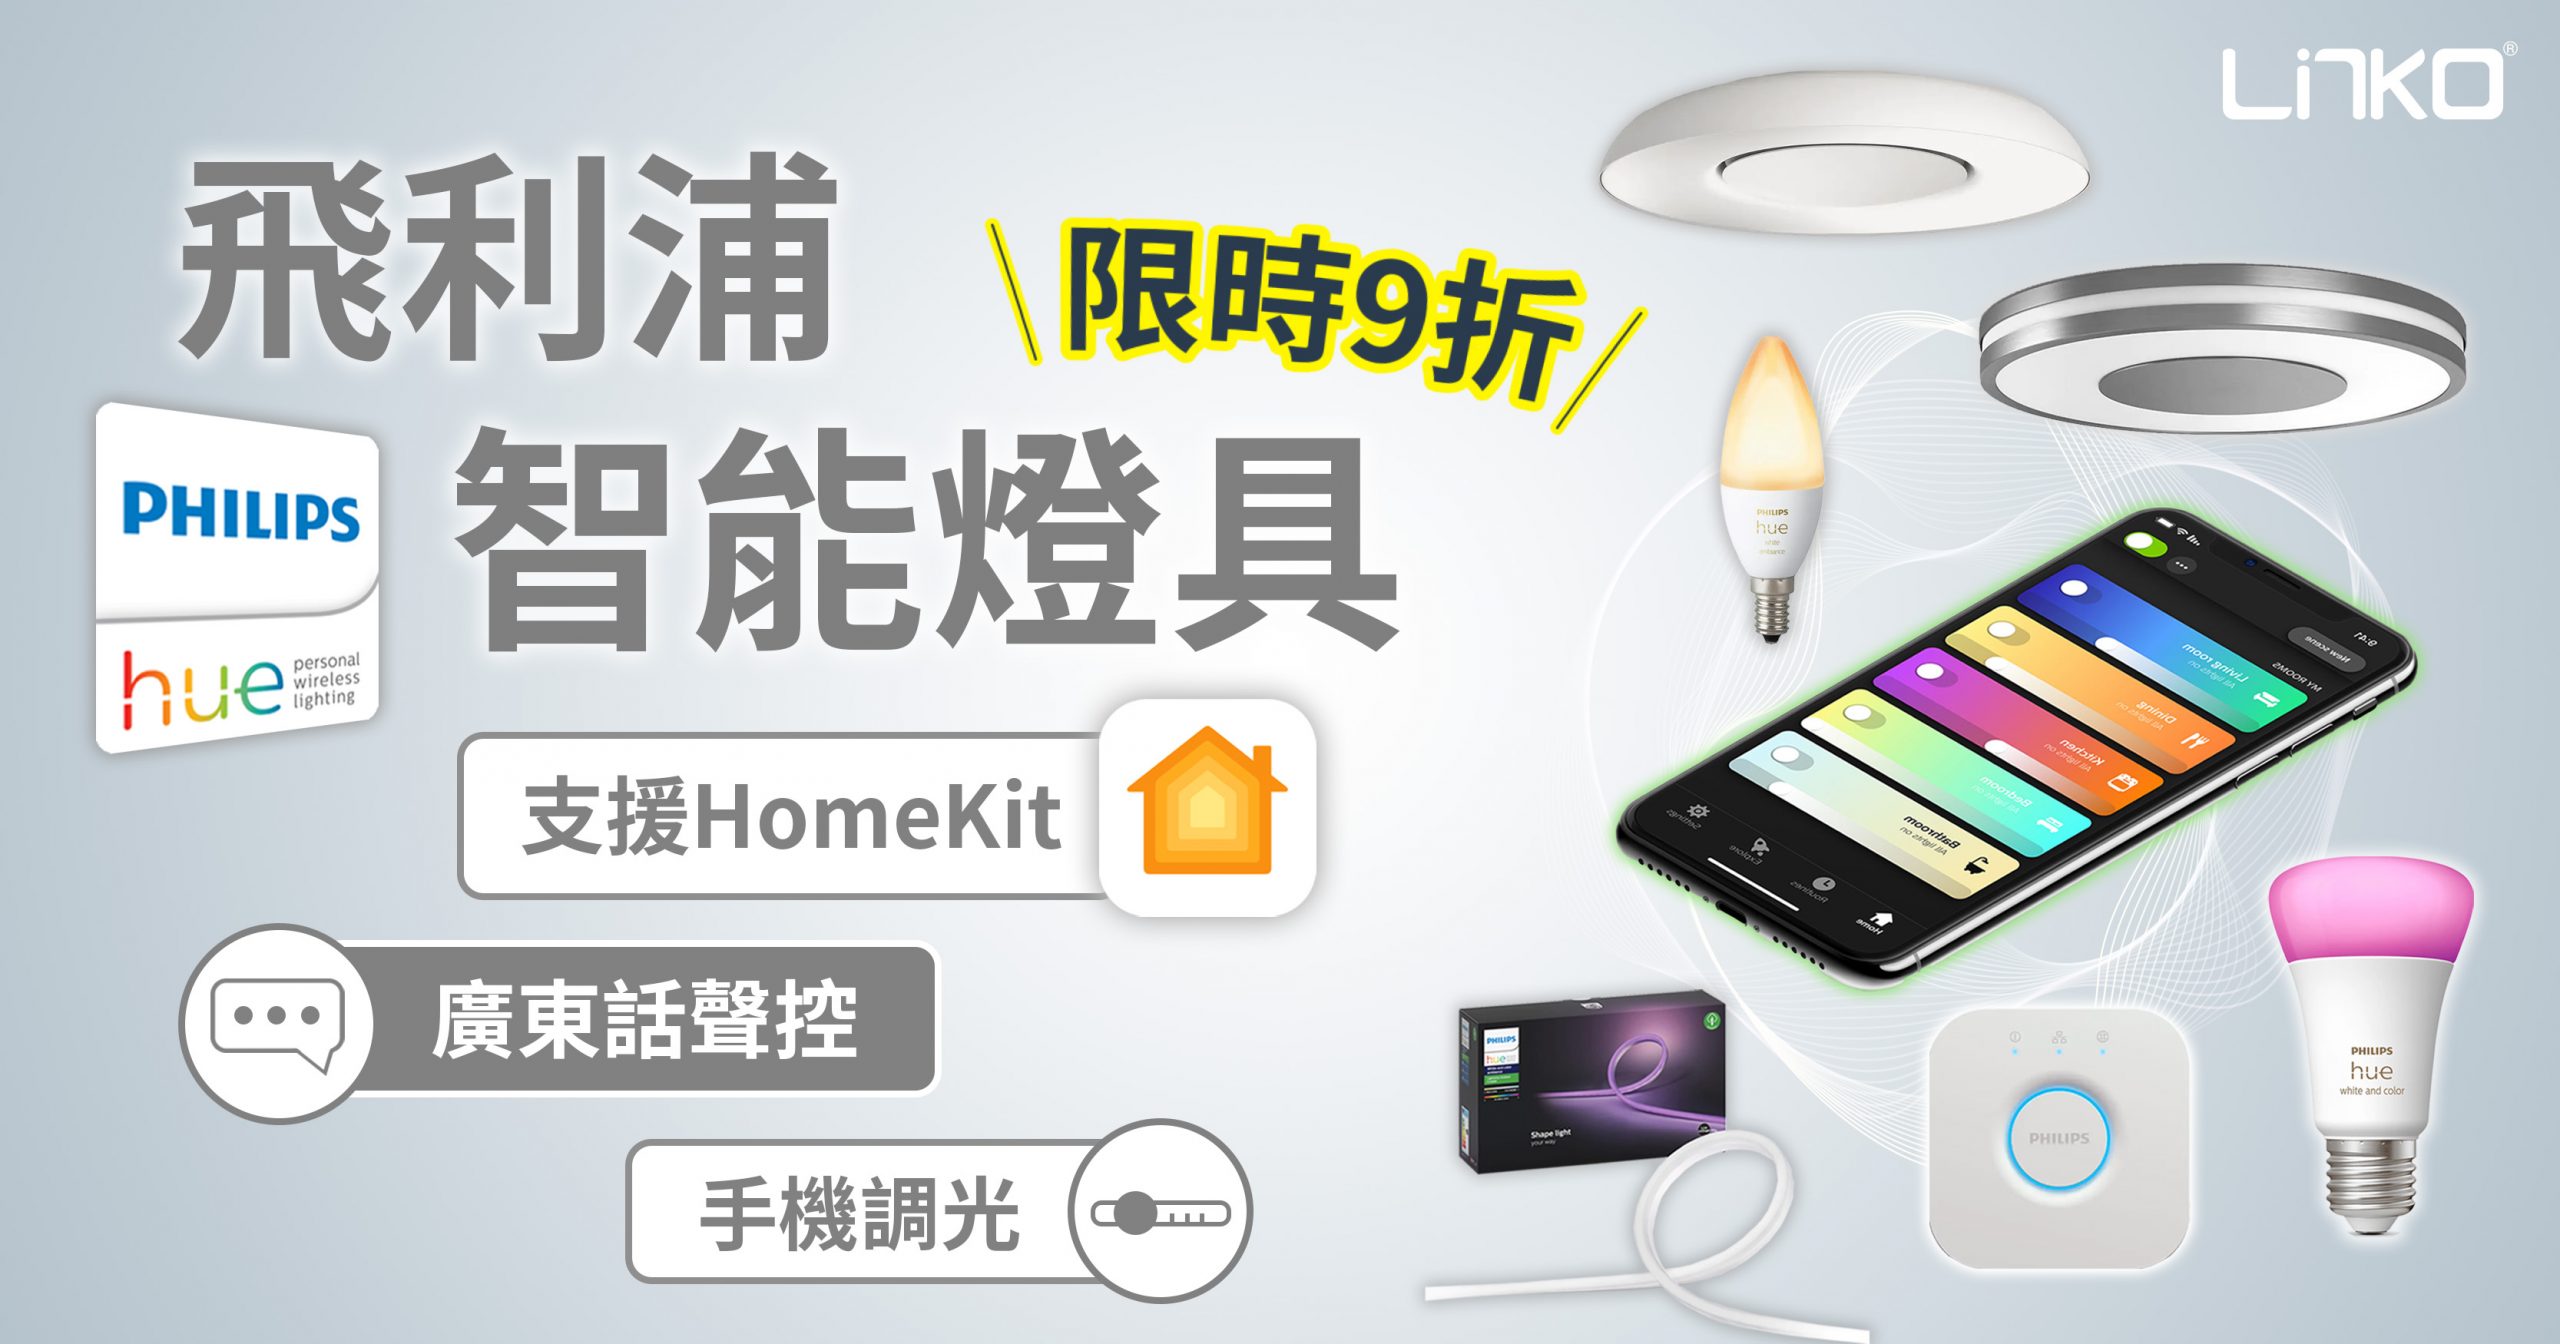 【9折優惠】飛利浦Philips Hue 智能燈具 支援HomeKit 廣東話聲控